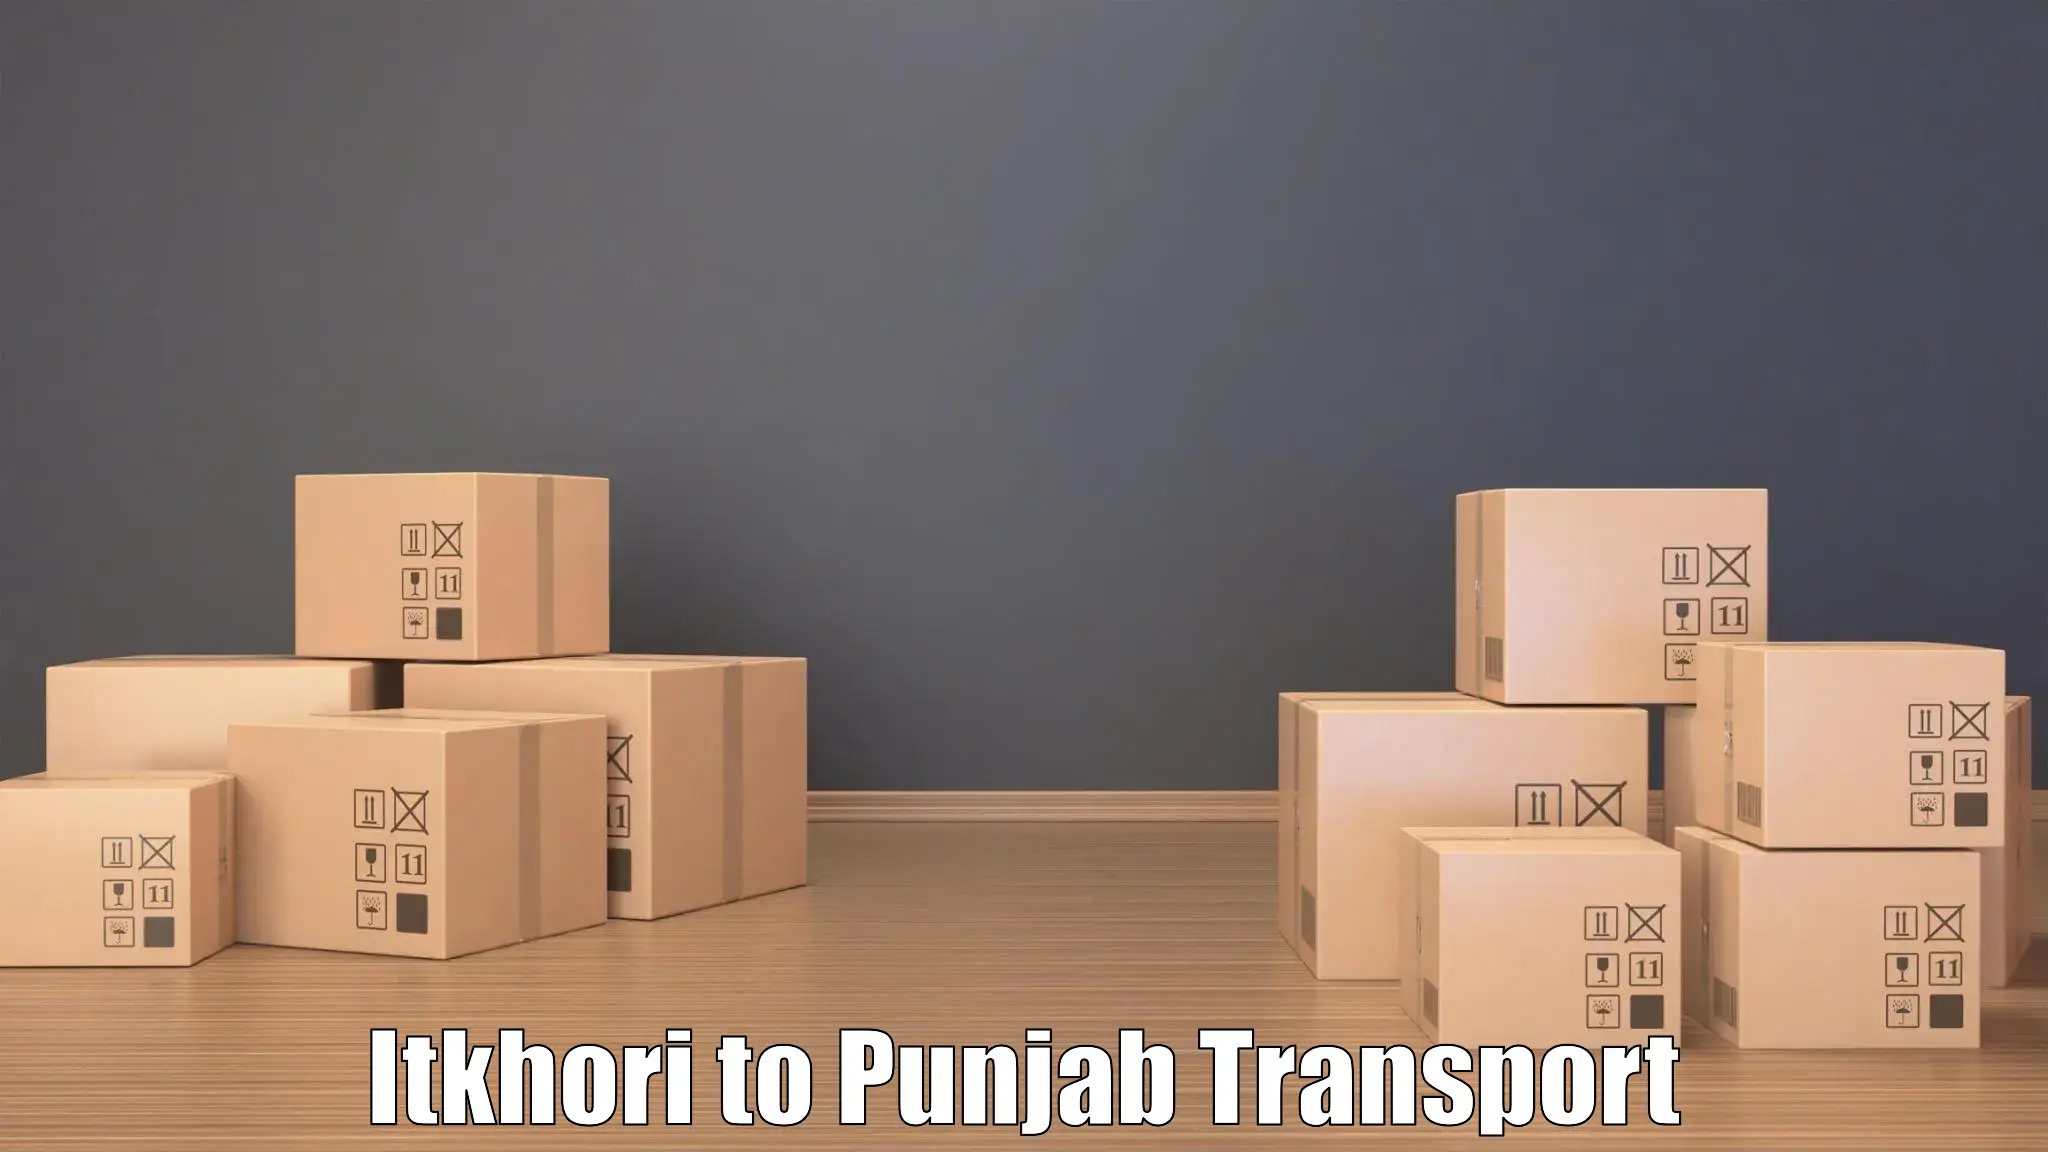 Transport in sharing Itkhori to Zira